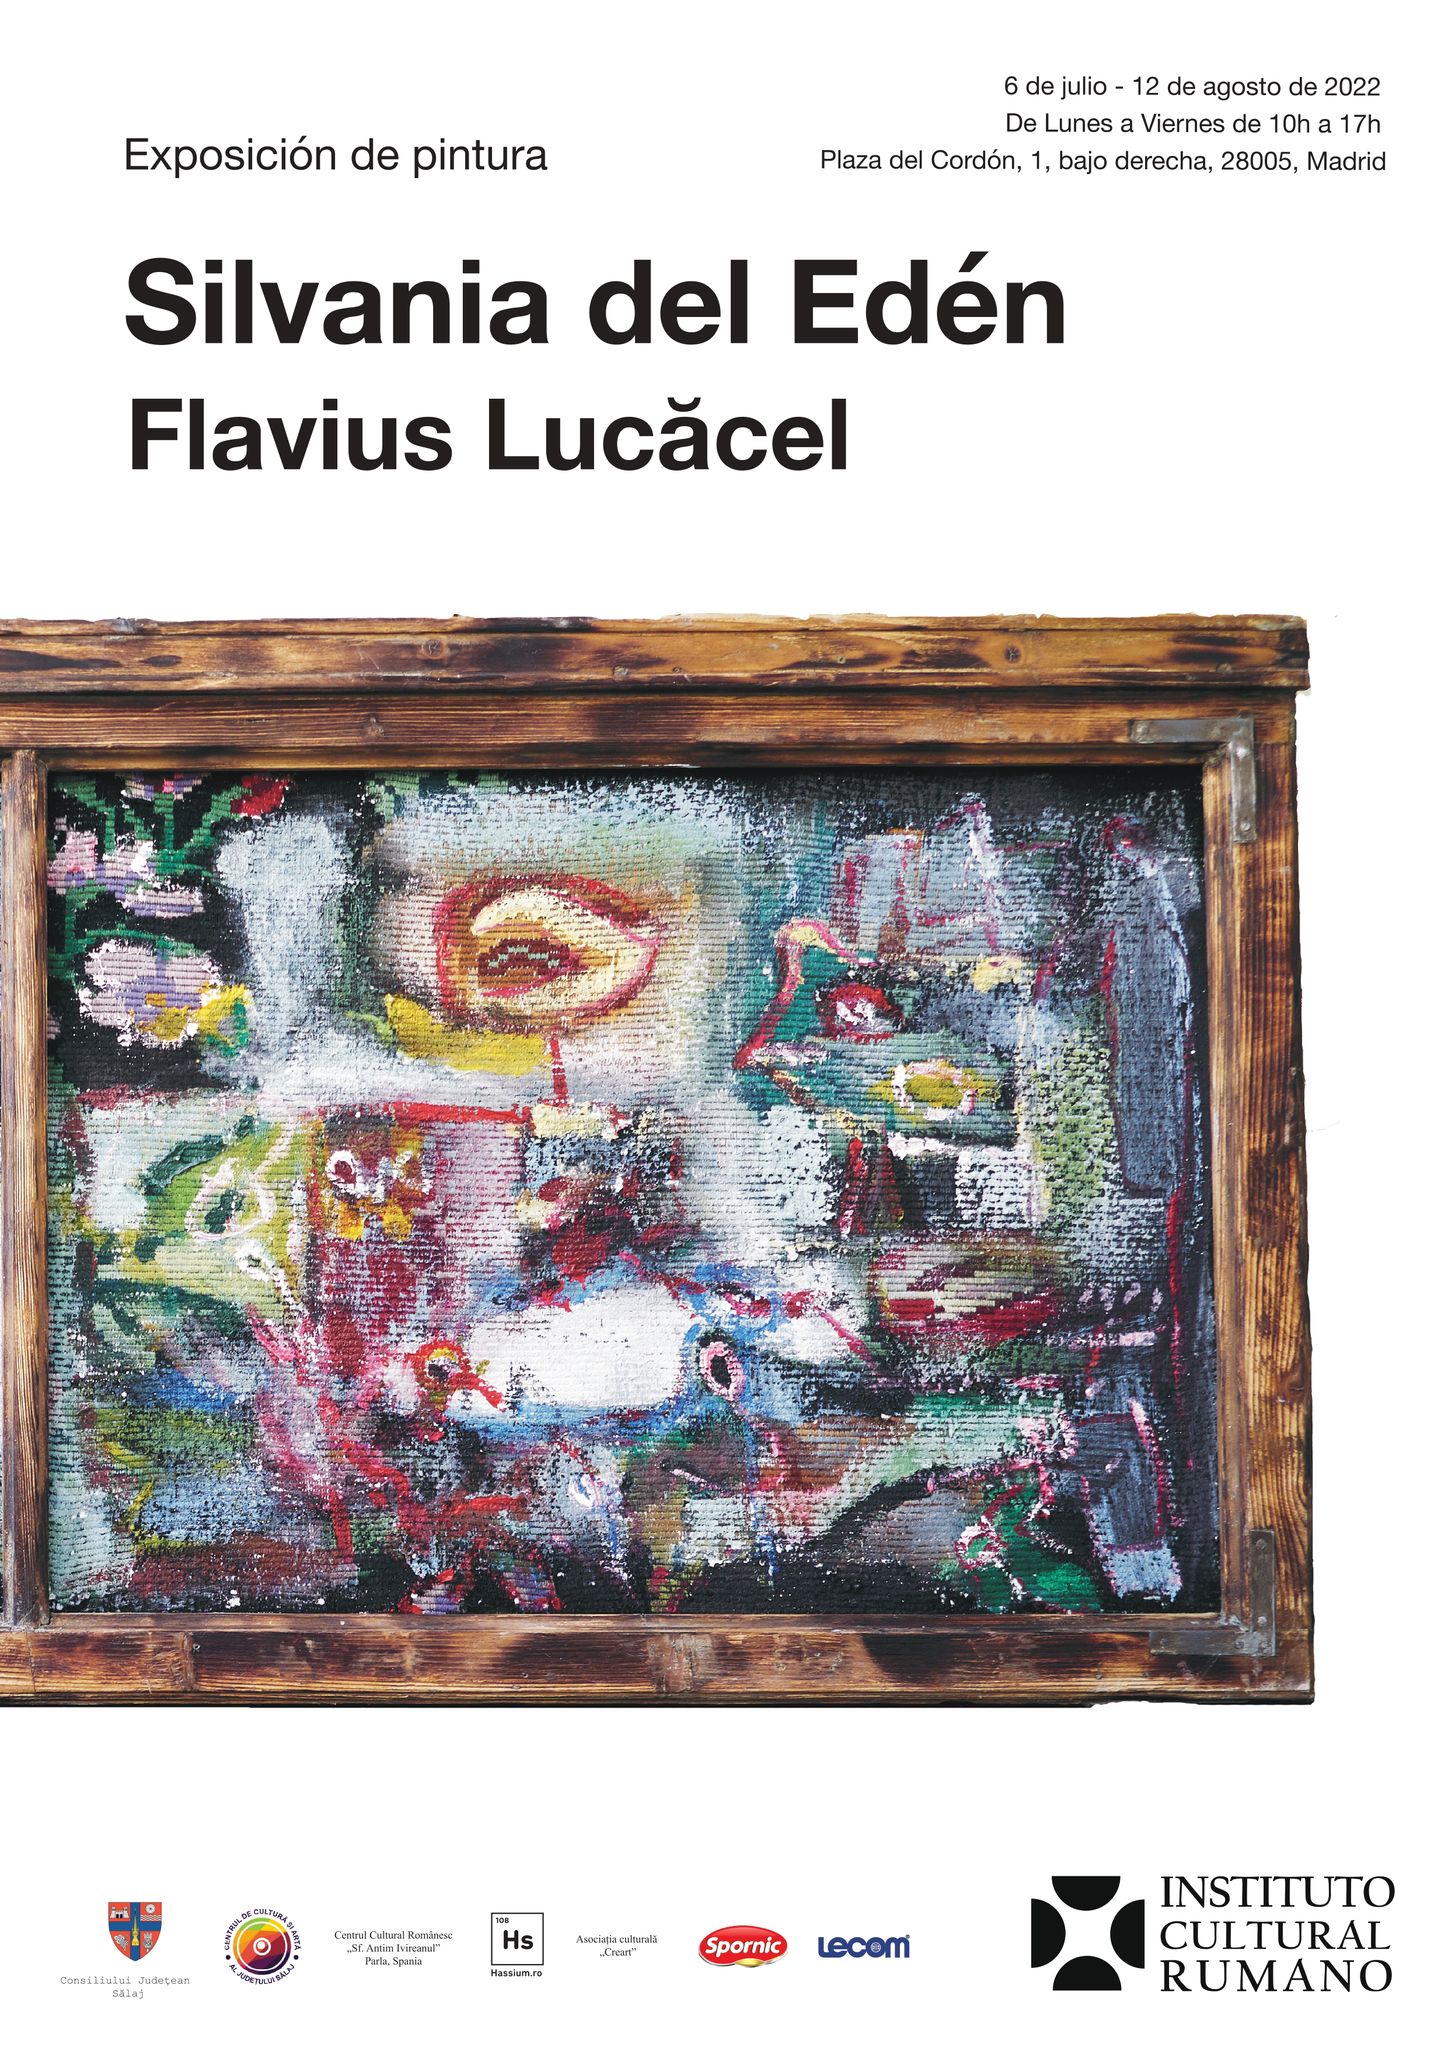 Expoziția artistului vizual Flavius Lucăcel „Edenul din Silvania” va fi inaugurată în Galeria ICR Madrid